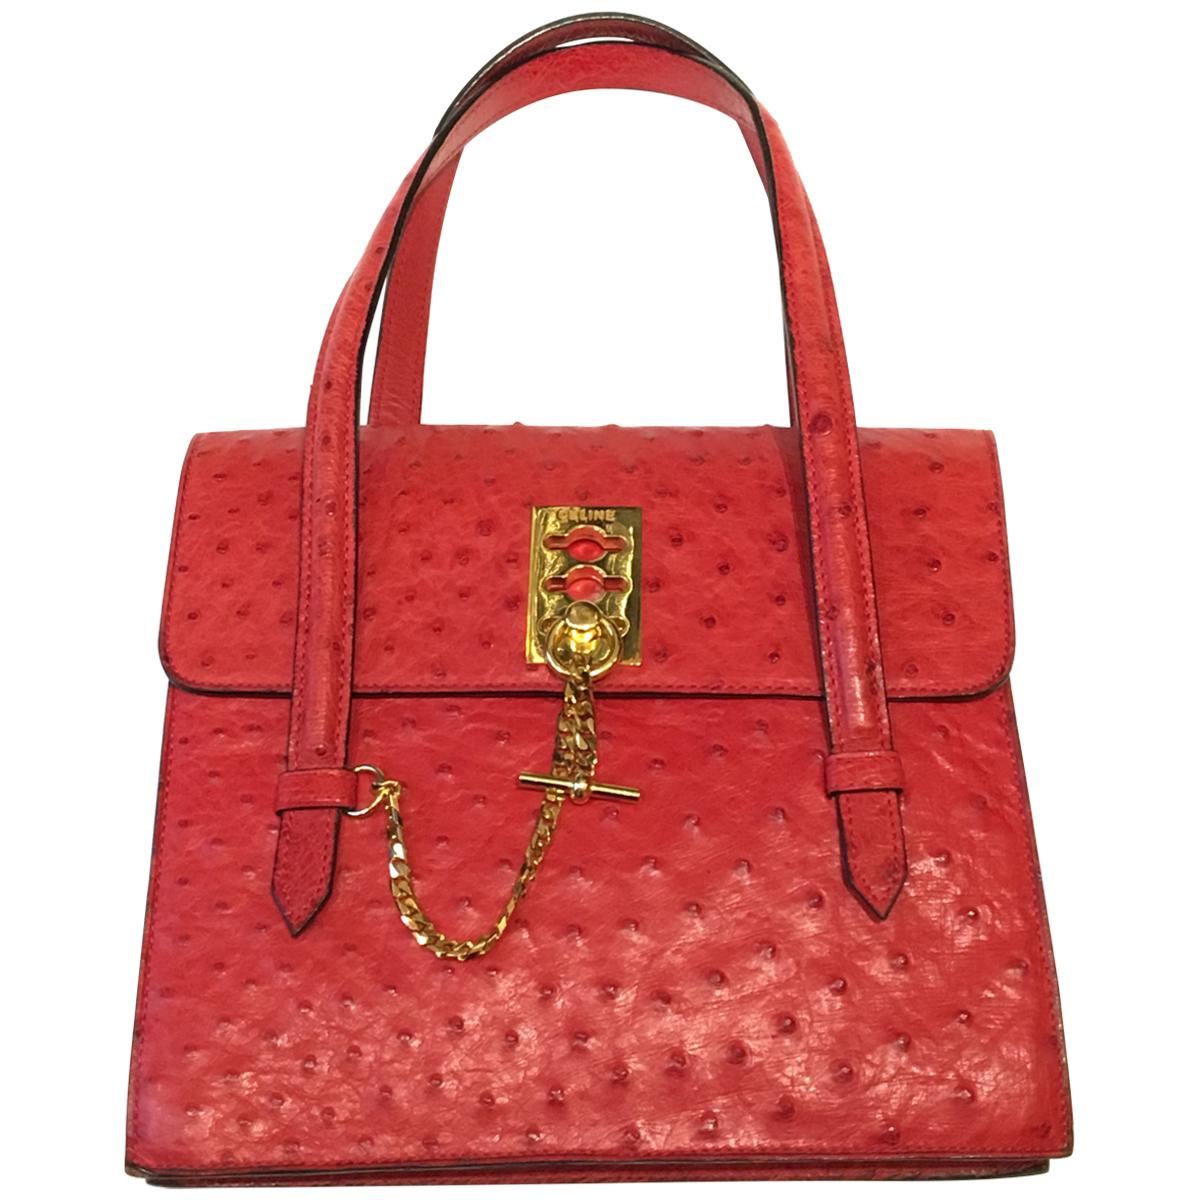 Vintage Celine Red Ostrich bag with golden hardware.